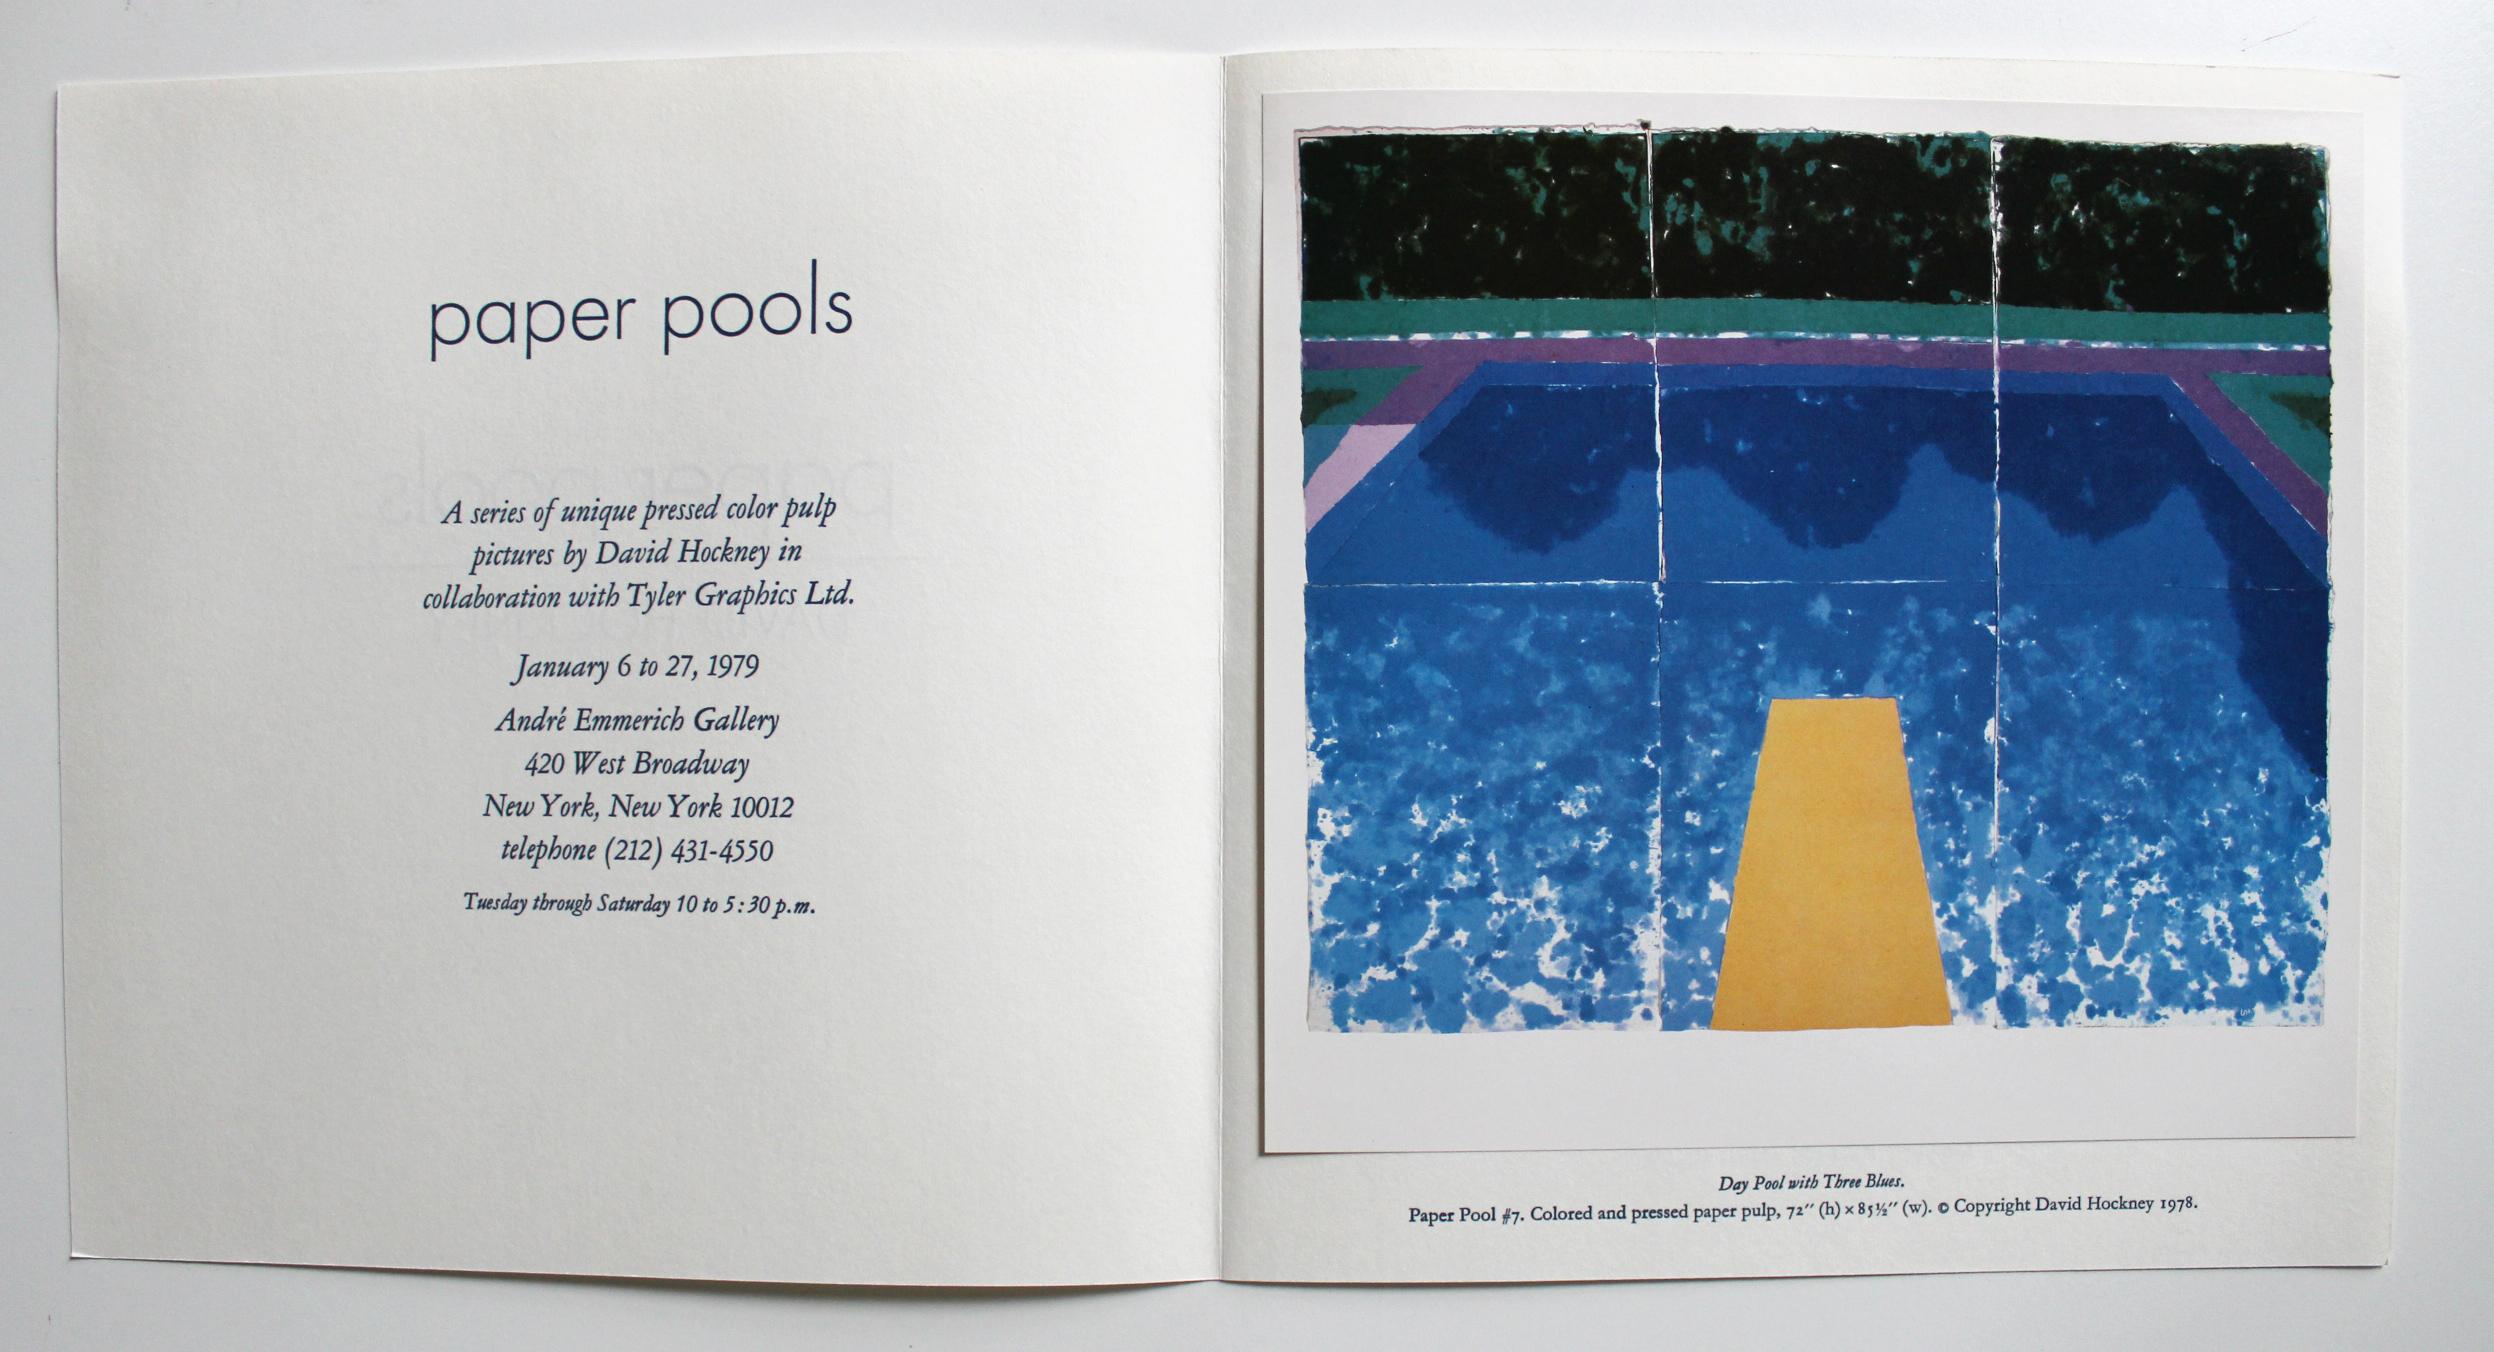 Se vende sin enmarcar

Producido con motivo de la colaboración de David Hockney Paper Pools con Tyler Graphics Ltd en 1979. La exposición estuvo en la Galería Andre Emmerich de Nueva York del 6 al 27 de enero de 1979. 
 
Dentro de la invitación